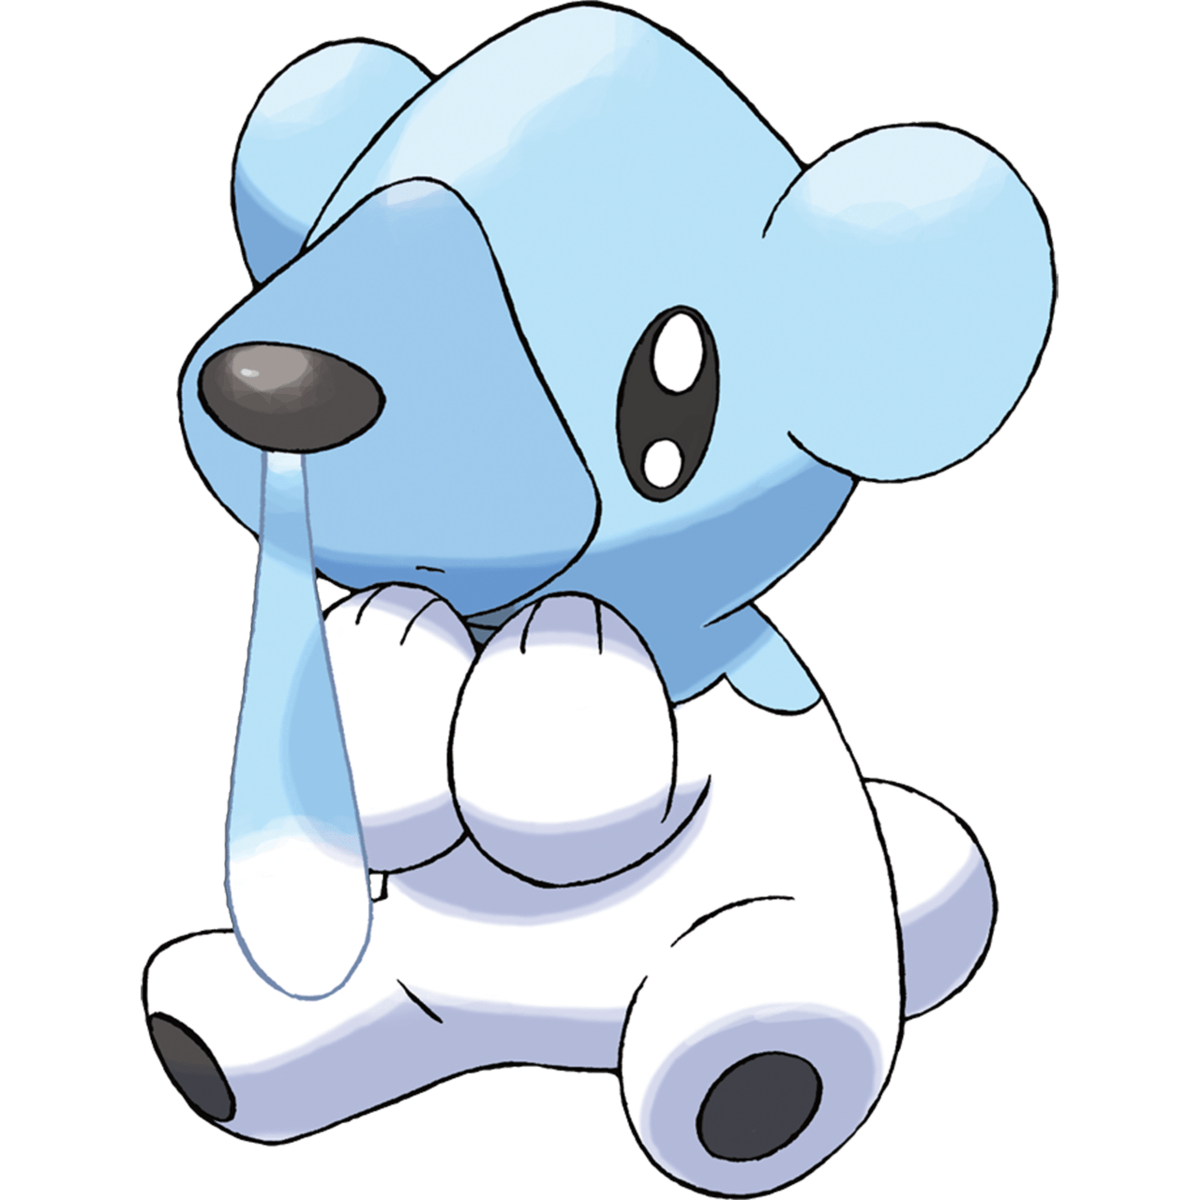 Cubchoo (Pokémon), The Community Driven Pokémon